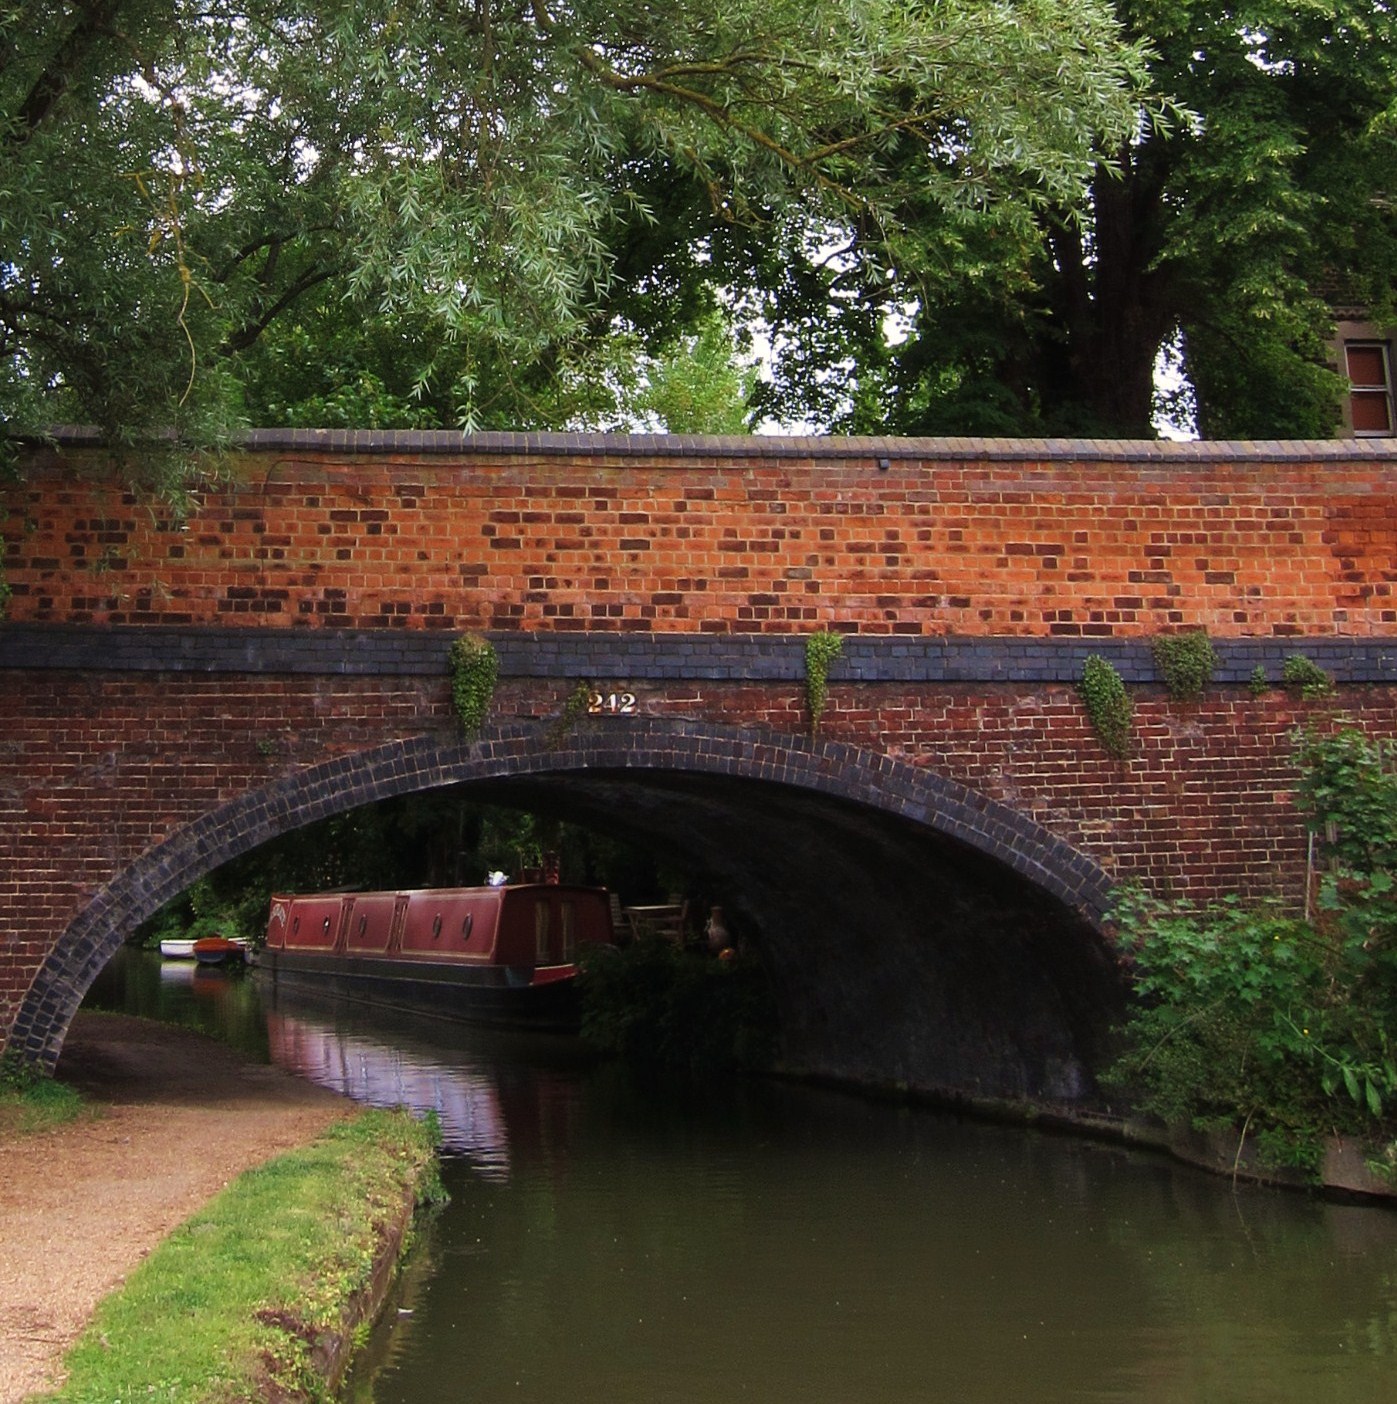 A red brick bridge over a small river